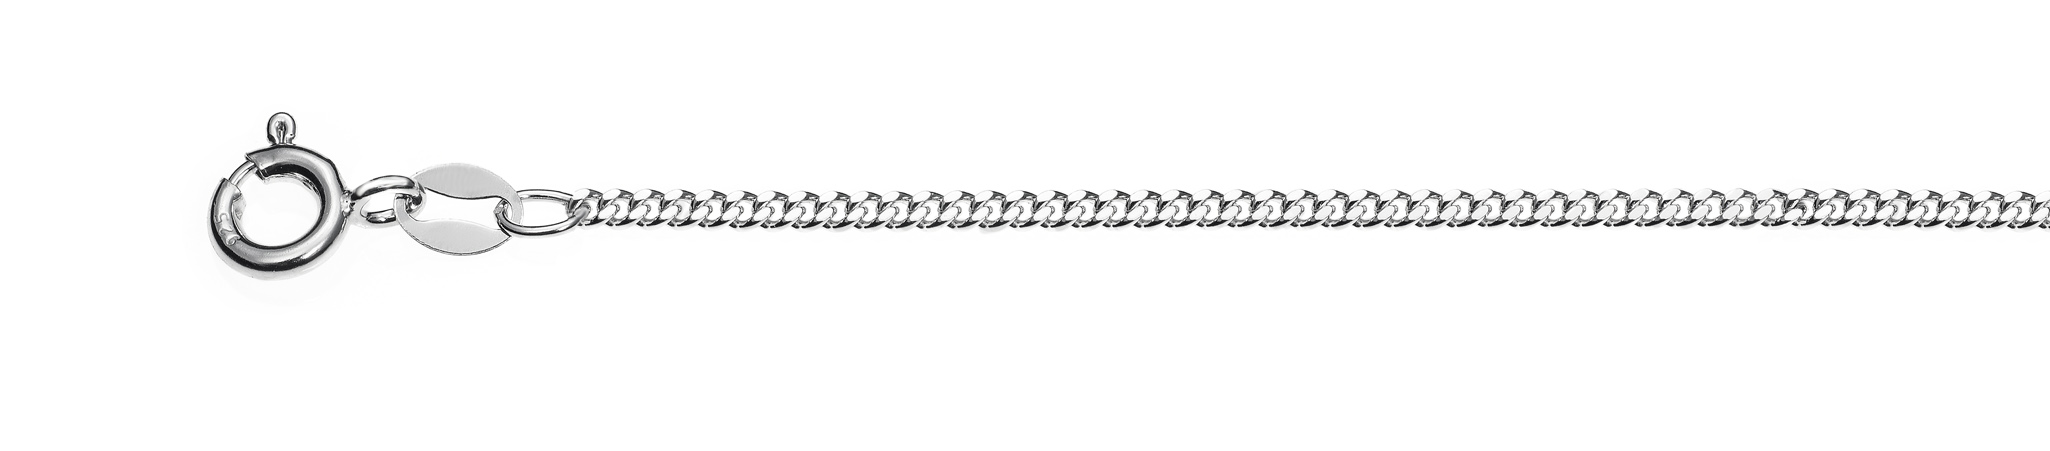 Ref.: 95550 - Diamond cut curb 0.50 rhodium plated - Wide 1.7